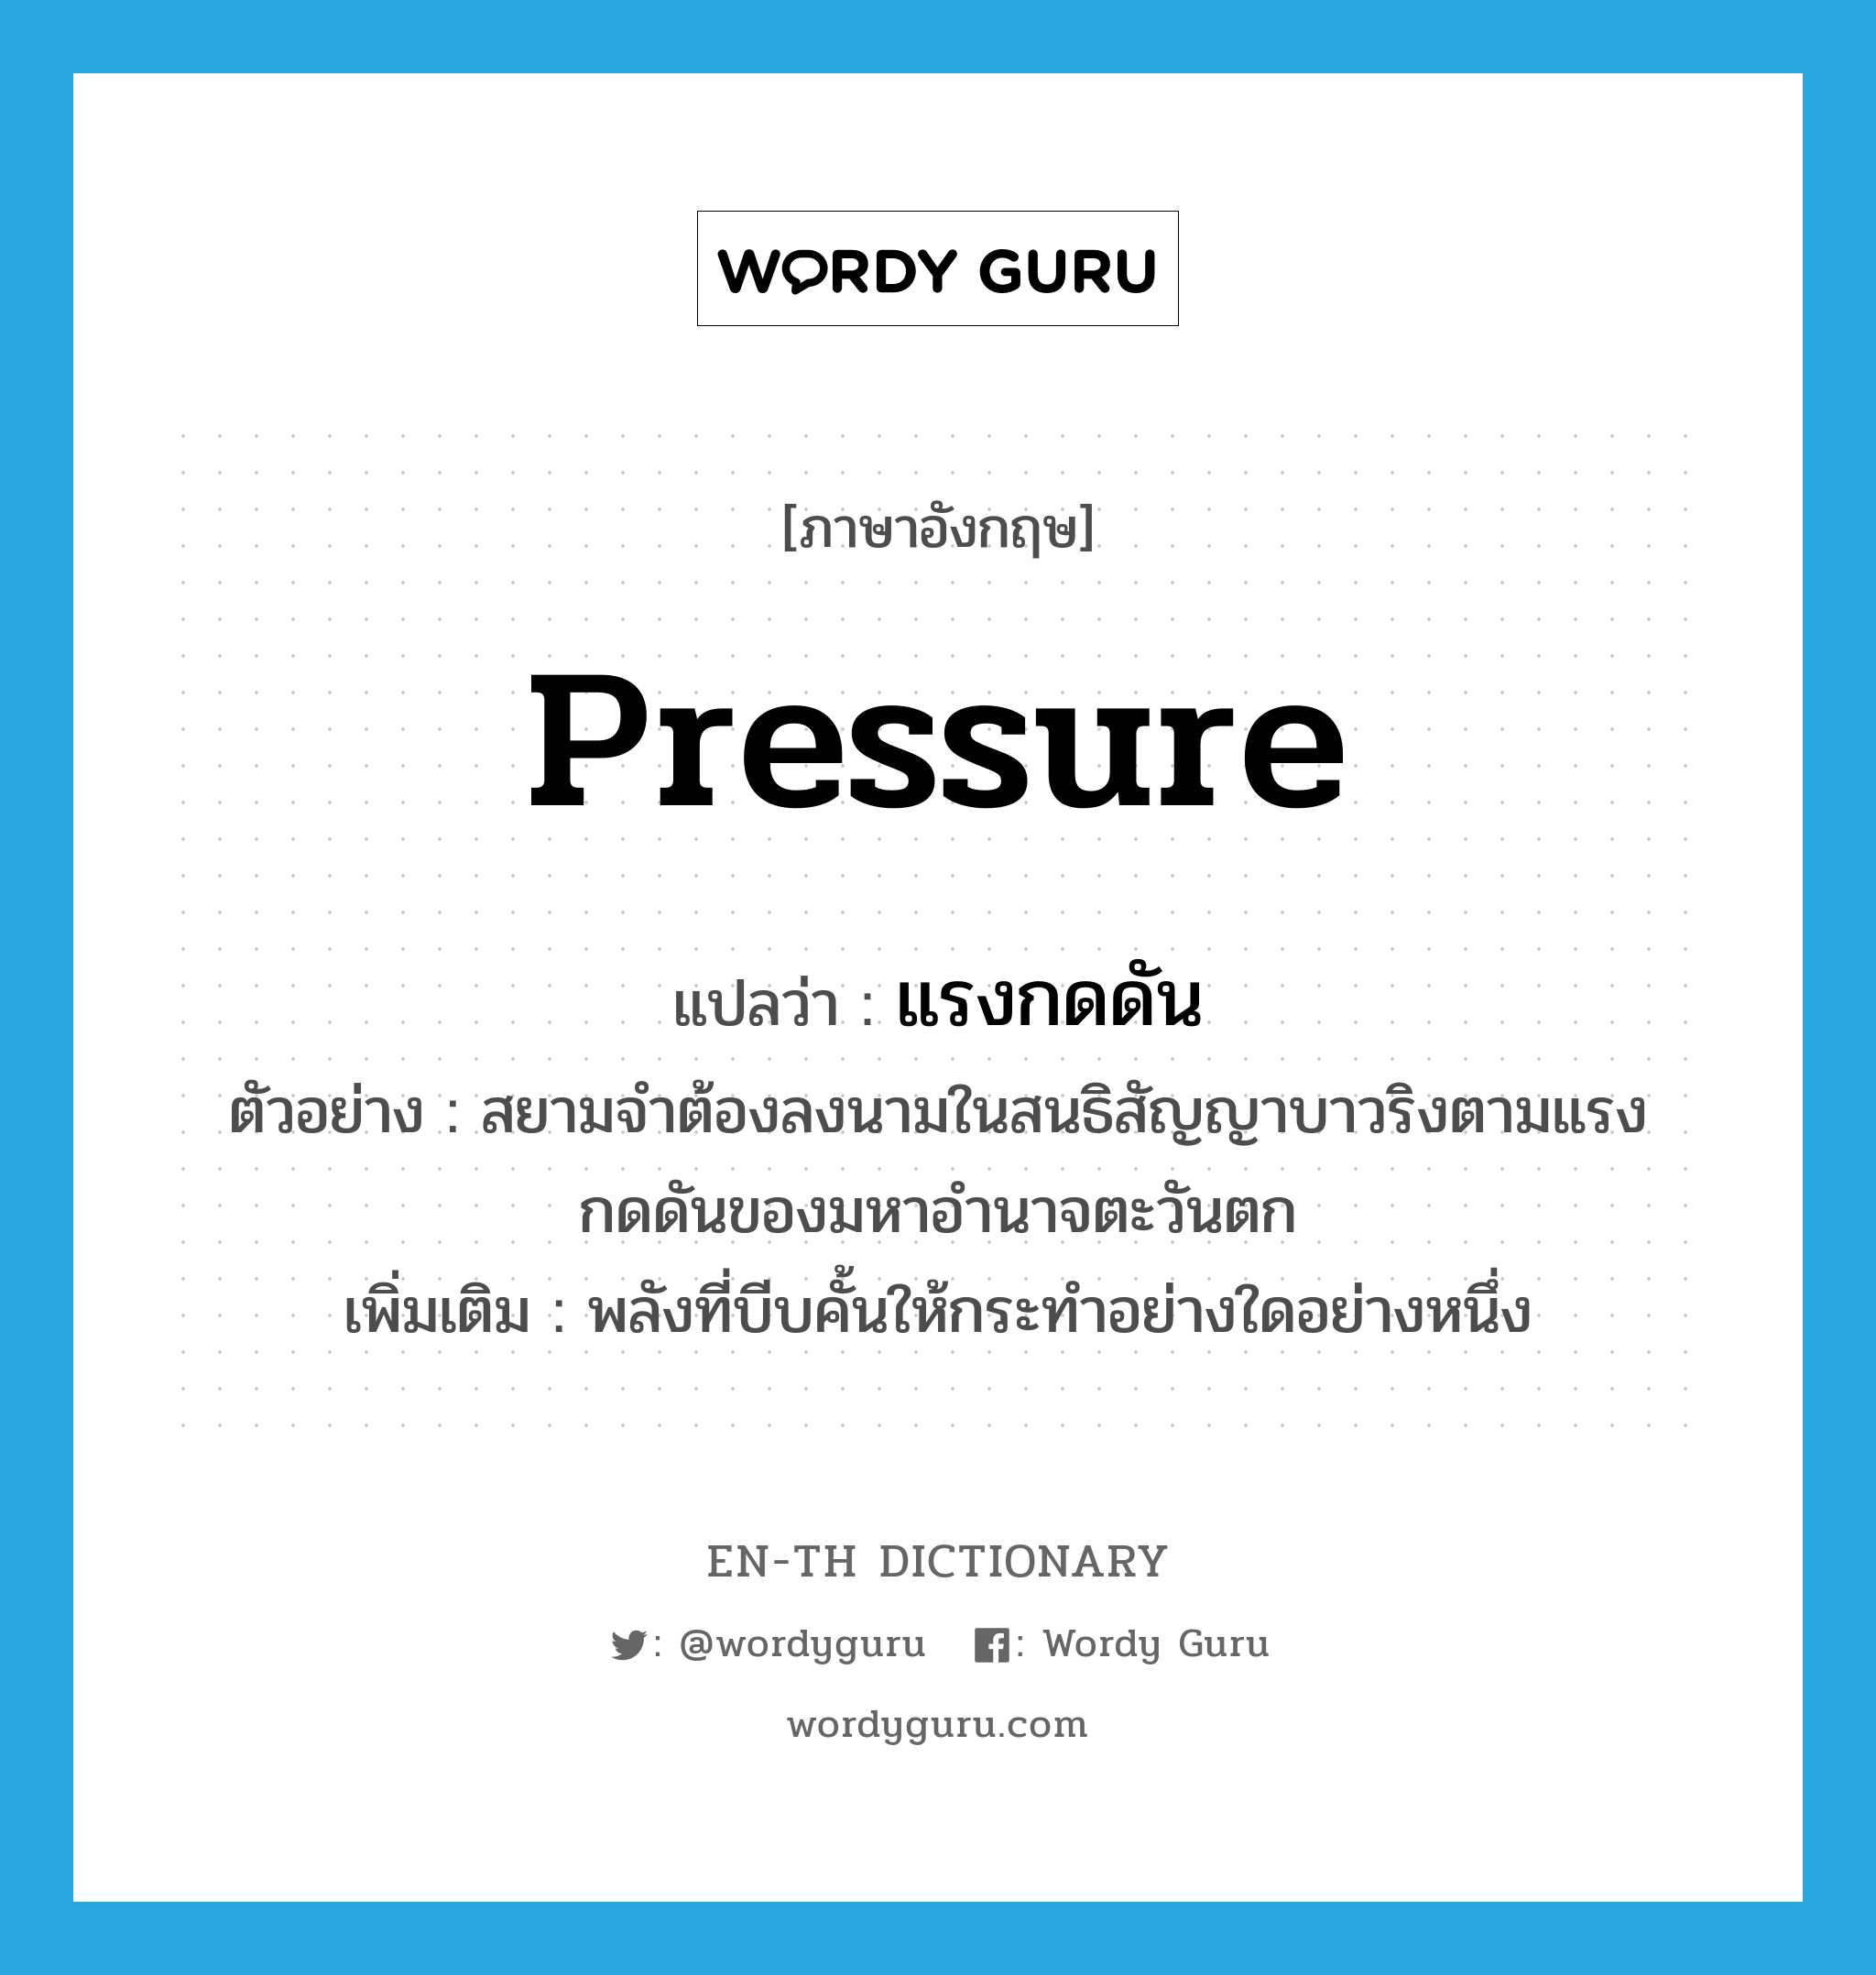 pressure แปลว่า?, คำศัพท์ภาษาอังกฤษ pressure แปลว่า แรงกดดัน ประเภท N ตัวอย่าง สยามจำต้องลงนามในสนธิสัญญาบาวริงตามแรงกดดันของมหาอำนาจตะวันตก เพิ่มเติม พลังที่บีบคั้นให้กระทำอย่างใดอย่างหนึ่ง หมวด N